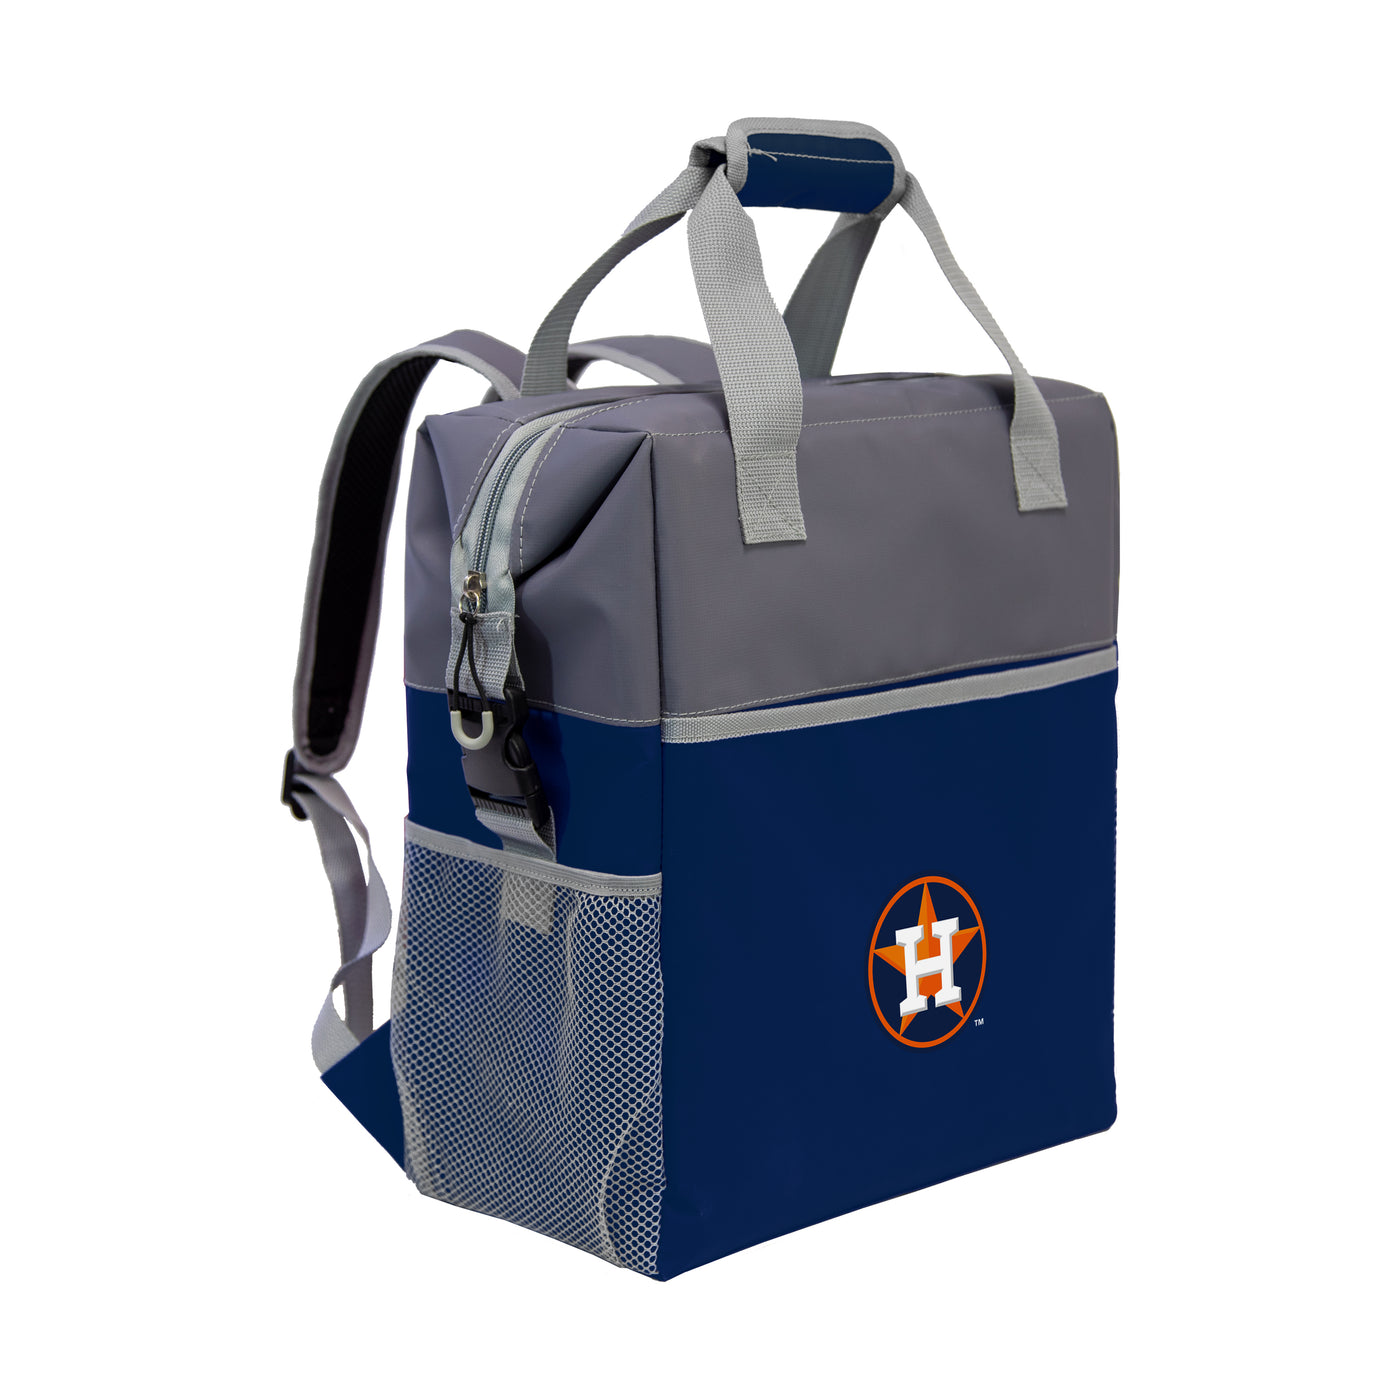 Houston Astros Backpack Cooler